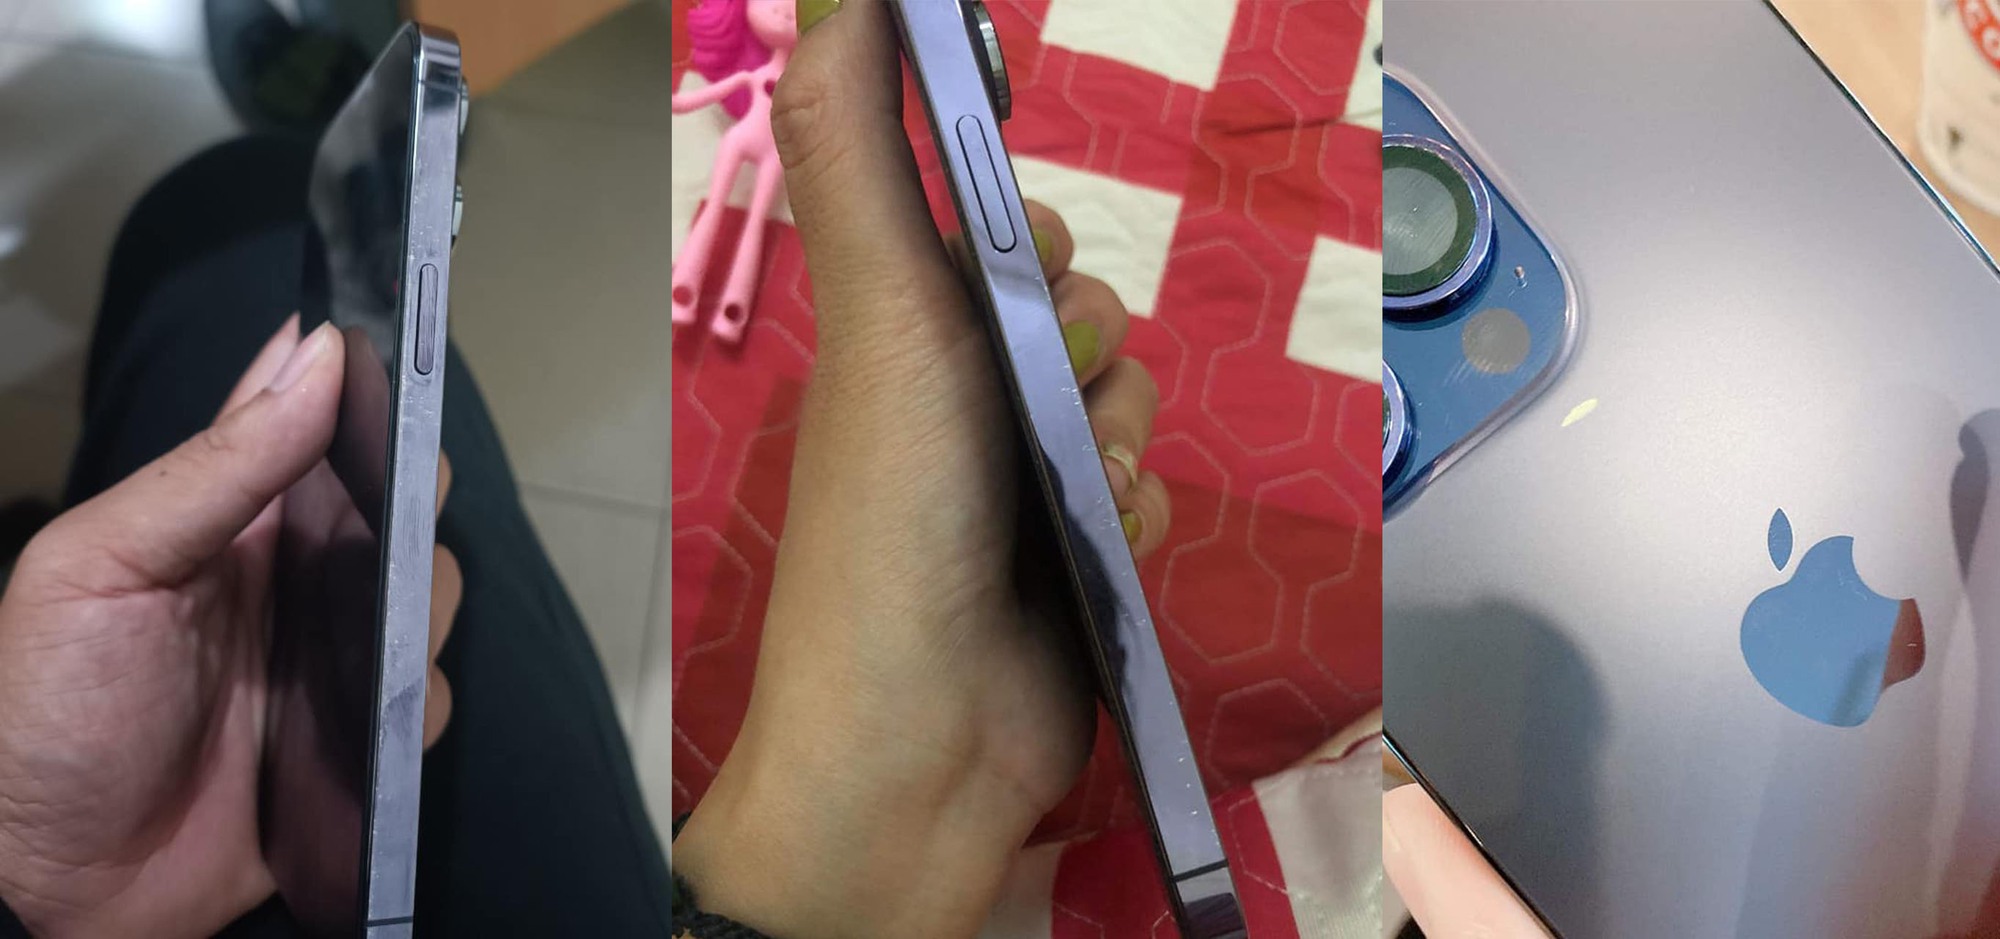 Hối hận vì mua iPhone 14 Pro Max màu tím  - Ảnh 3.